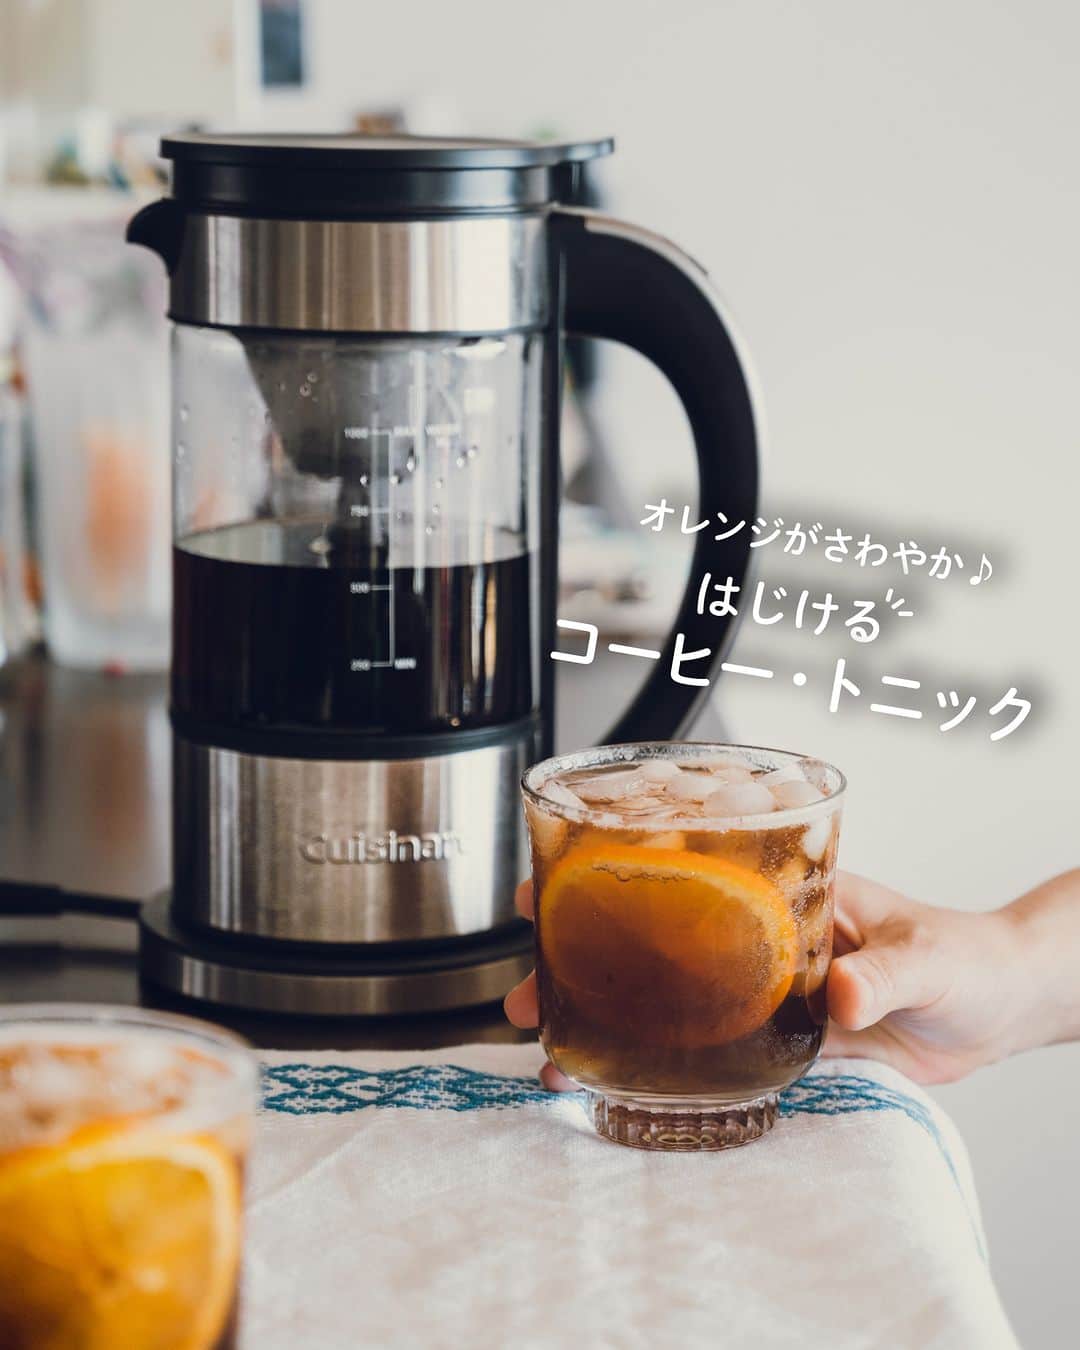 Cuisinart(クイジナート)ジャパン公式アカウントのインスタグラム：「オレンジがさわやか♪コーヒー・トニック🥤  コーヒーの苦味と香ばしさにオレンジの爽やかさをプラスした、 炭酸シュワシュワのコールドドリンク✨  クイジナートの「ファウンテン コーヒーメーカー」は、 抽出温度・時間の調節がボタン一つでできるので、 コーヒー・トニック用の濃いめの抽出も簡単に😊  初夏にぴったりなおしゃれなカフェドリンクが おうちでも楽しめますよ✨  ---------------------------------- 🥤コーヒー・トニック 📝材料 5カップ分 コーヒー…30g 水… 250cc トニックウォーター…150cc×5カップ ガムシロップ…適量 オレンジのスライス…適量 氷…適量  📝設定 抽出温度：90〜95度 抽出時間：3〜4分  📝作り方 ①フィルターにコーヒーを入れて、 90〜95度、3〜4分にセットし、濃いめに抽出する。  ②グラスにあらかじめ冷やしたトニックウォーターを注ぎ、シロップと氷を加えてよく混ぜる。  （コーヒーとトニックウォーターの比率は1対3が目安ですが、お好みで調整してください）  ③②にコーヒーを注ぎ、仕上げにオレンジを加える。 ---------------------------------- クイジナート公式レシピ  「コーヒー・トニック」ご存知でしたか？🥤 「知ってた」「好き」という人は→❤️ 「知らなかった、飲んでみたい！」という人は→「🤍」 コメント欄で教えてくださいね♪  ・。・。・。・⁣⁣ 📷Photo： @yutaokashi  ☕️Item：ファウンテン コーヒーメーカー  🔍FCC-1KJ ・。・。・。・。・。・⁣⁣  ーーーーー クイジナート公式HPでは、毎日の料理が楽しくなる様々な製品情報やレシピを公開中♪ 詳しくはプロフィールのリンクから！ ▶️@cuisine_art ーーーーー  #クイジナート #cuisinart #クイジナートのある生活 #クイジナートLOVE #クイジナートファウンテンコーヒーメーカー #丁寧な暮らし #コーヒー #コーヒーのある暮らし #コーヒーメーカー #コーヒーメーカーのある暮らし #コーヒータイム #電気ケトル #珈琲時間 #コーヒー好き #コーヒーのある生活 #珈琲のある生活 #珈琲日記 #コーヒー部 #コーヒートニック #アイスコーヒー #カフェドリンク #おうちカフェ #コーヒートニック #トニックウォーター #トニックソーダ #コールドブリュー #コールドブリューコーヒー #オレンジコーヒートニック #アイスコーヒー好き #アイスコーヒーはじめました」